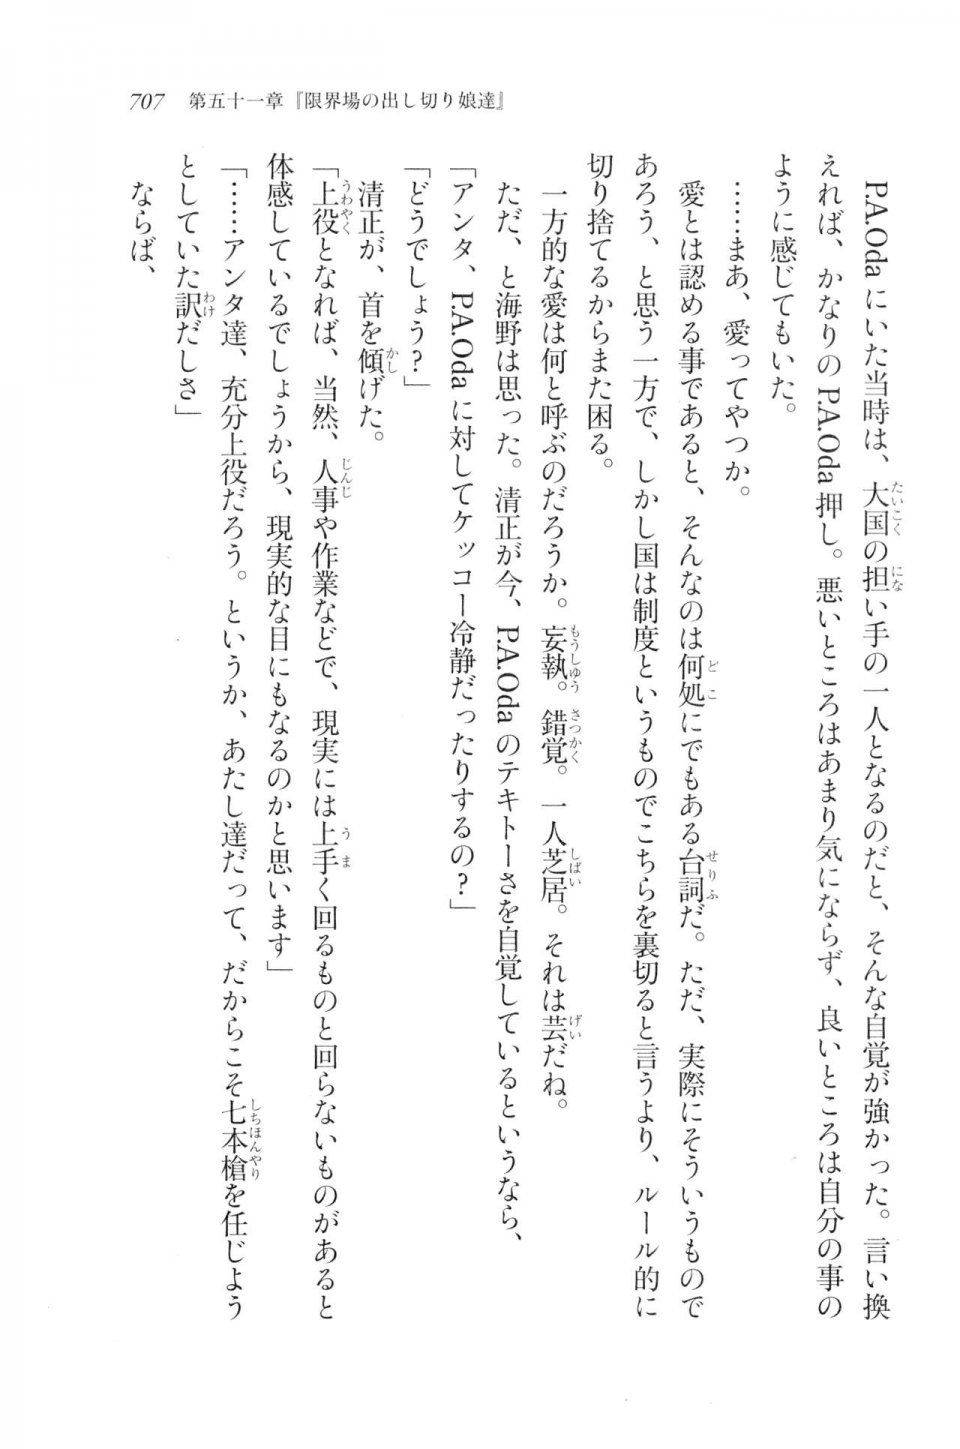 Kyoukai Senjou no Horizon LN Vol 20(8B) - Photo #707